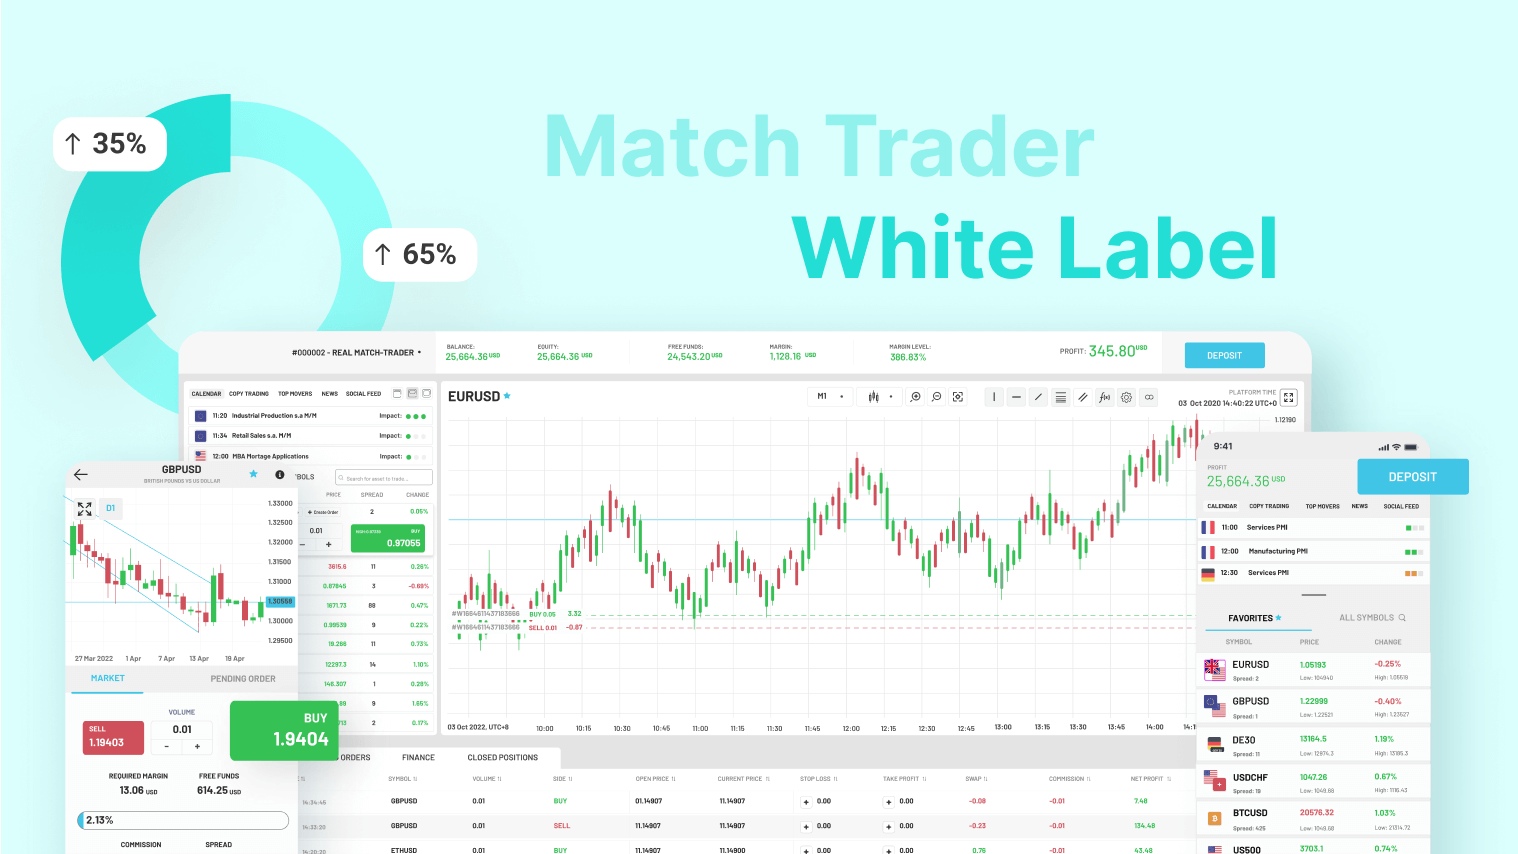 Match Trader White Label (bullets, design, new website page)v (1)